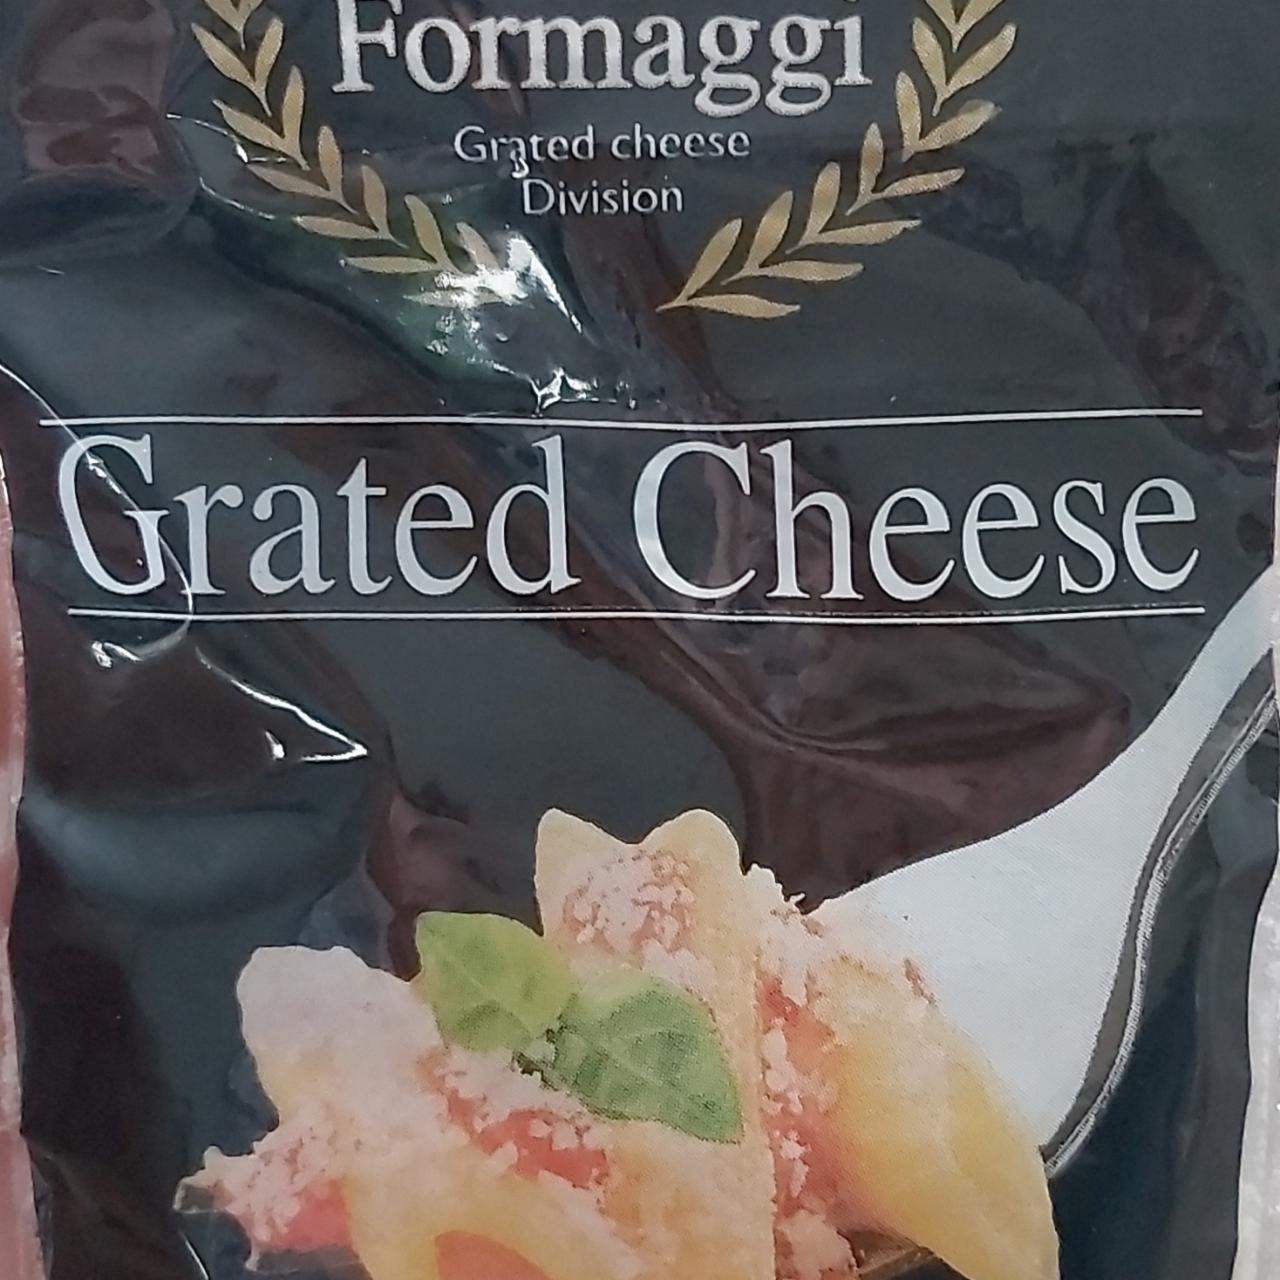 Fotografie - Grated Cheese Fallini Formaggi